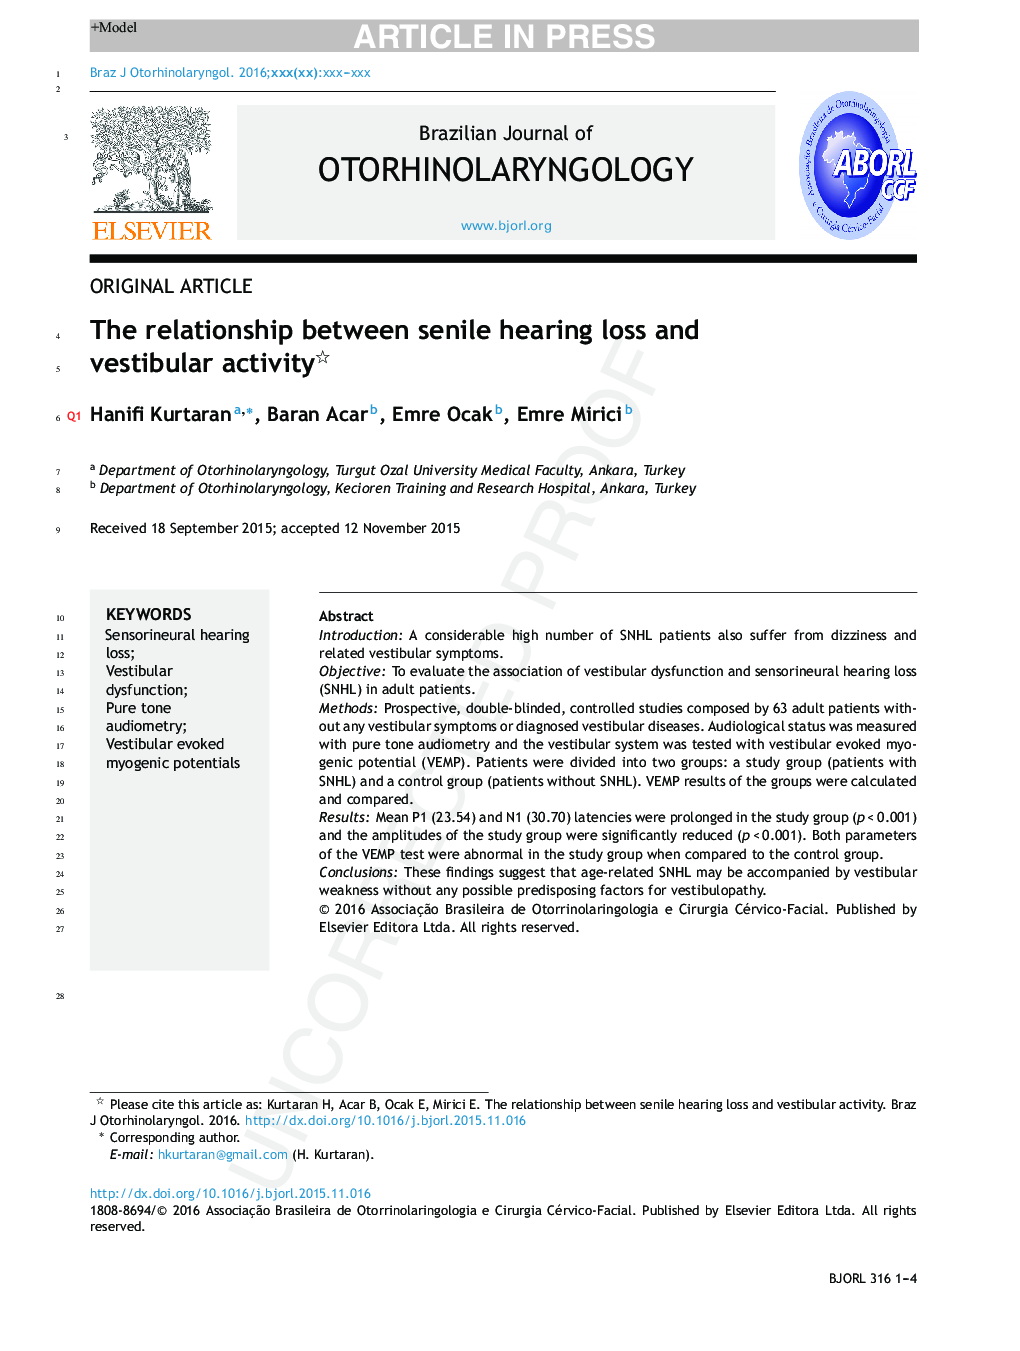 ارتباط بین کاهش شنوایی سالمندان و فعالیت های ویستیبولار 